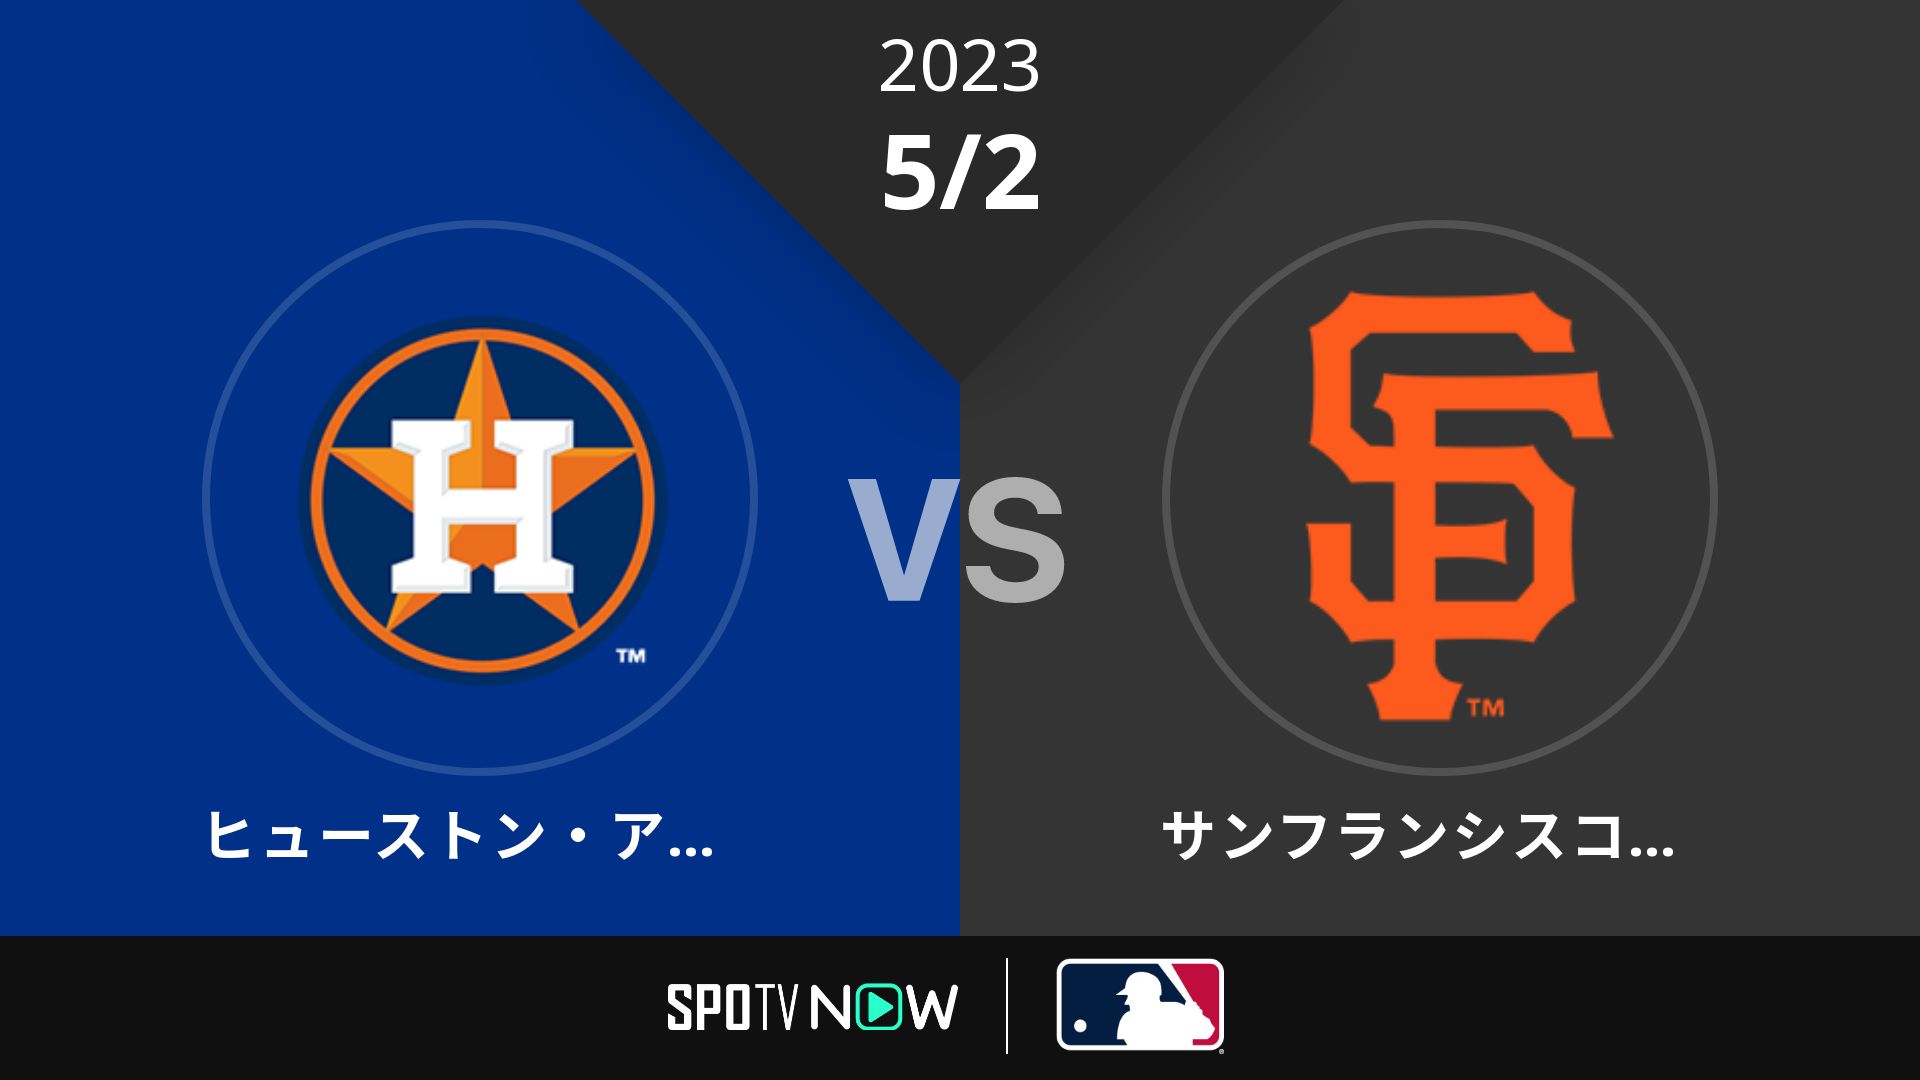 2023/5/2 アストロズ vs ジャイアンツ [MLB]